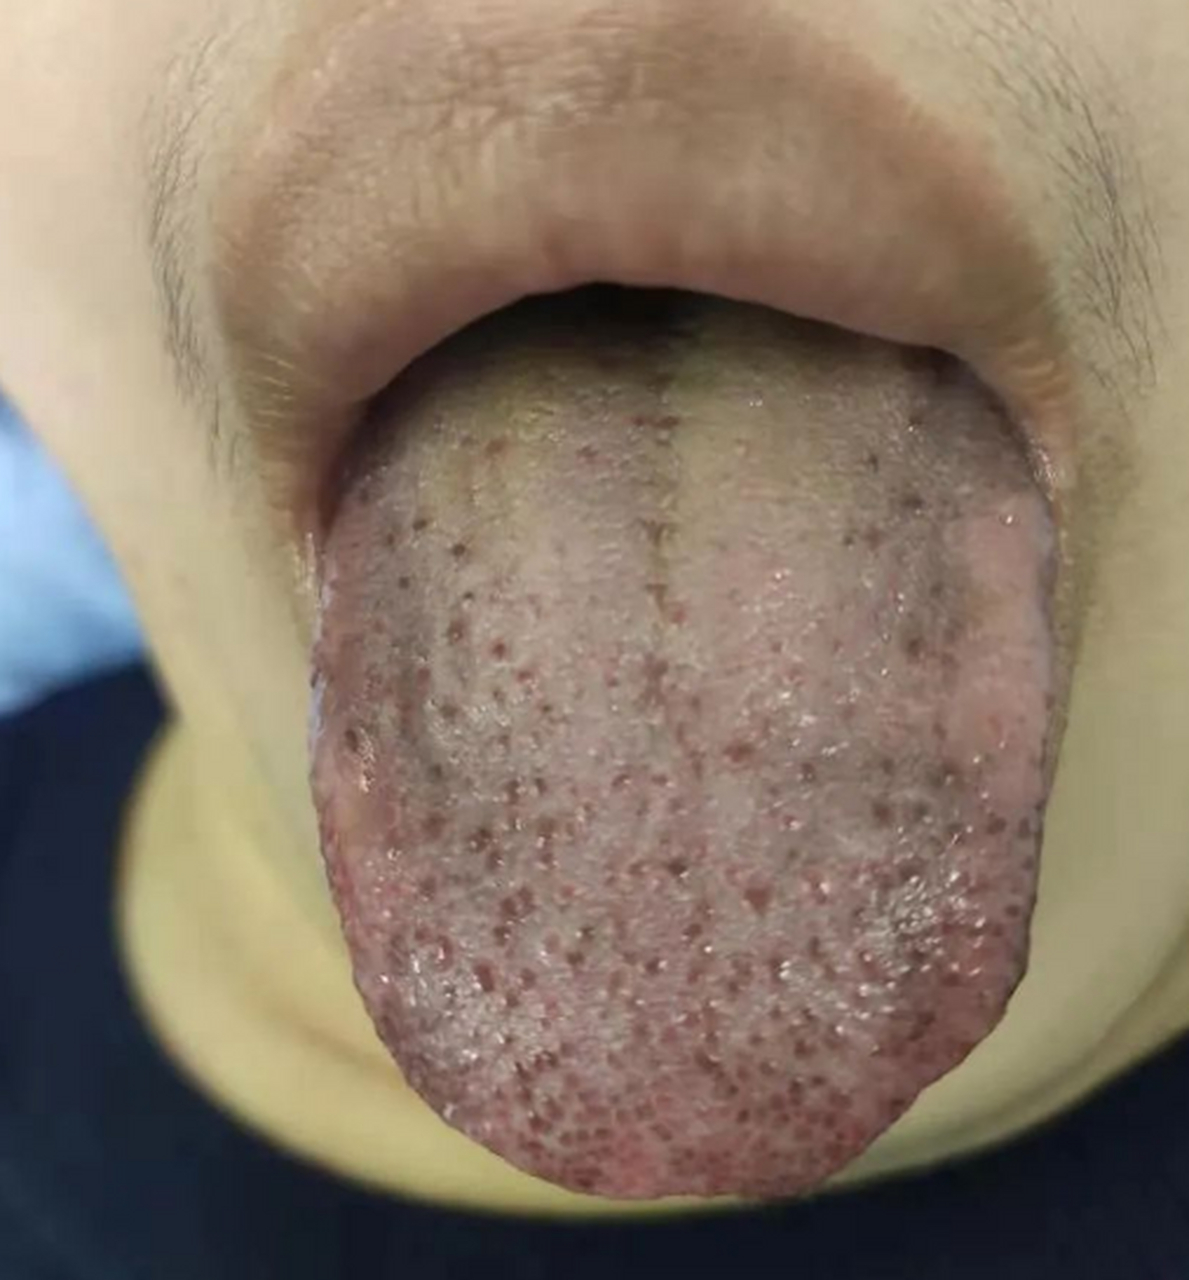 肝病舌头两侧图片图片